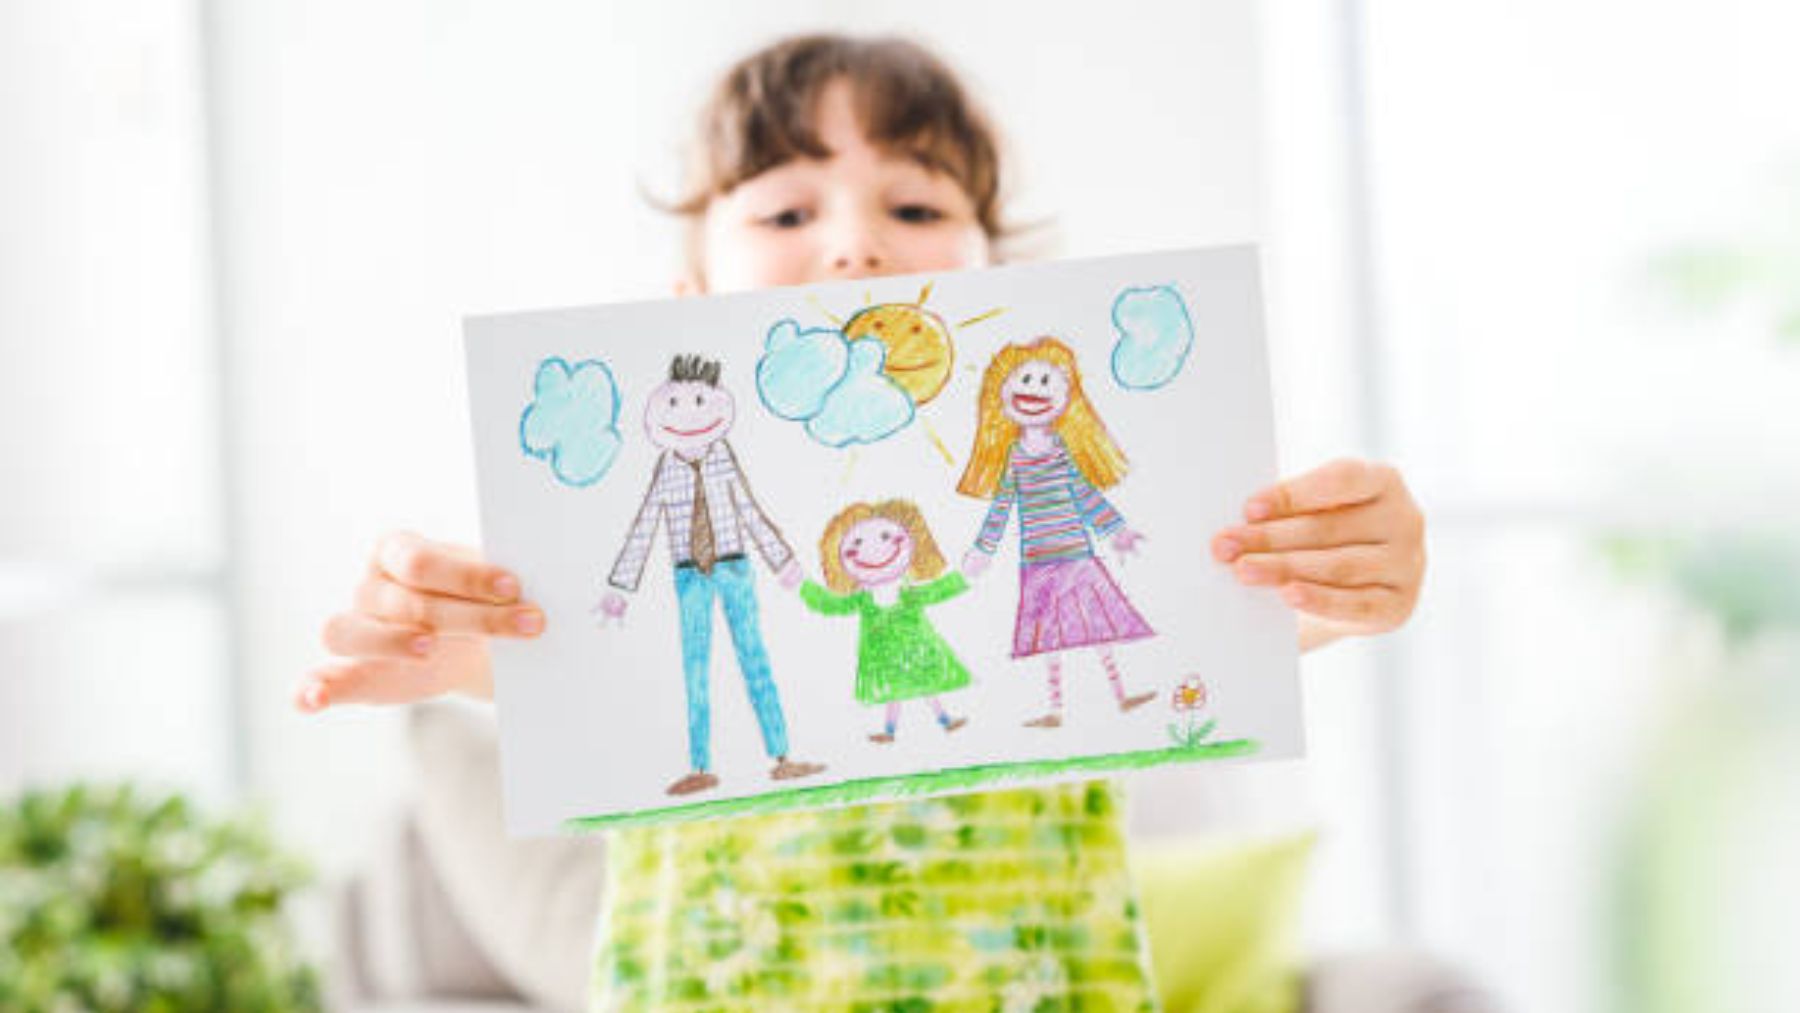 Pautas para interpretar el dibujo infantil de una familia